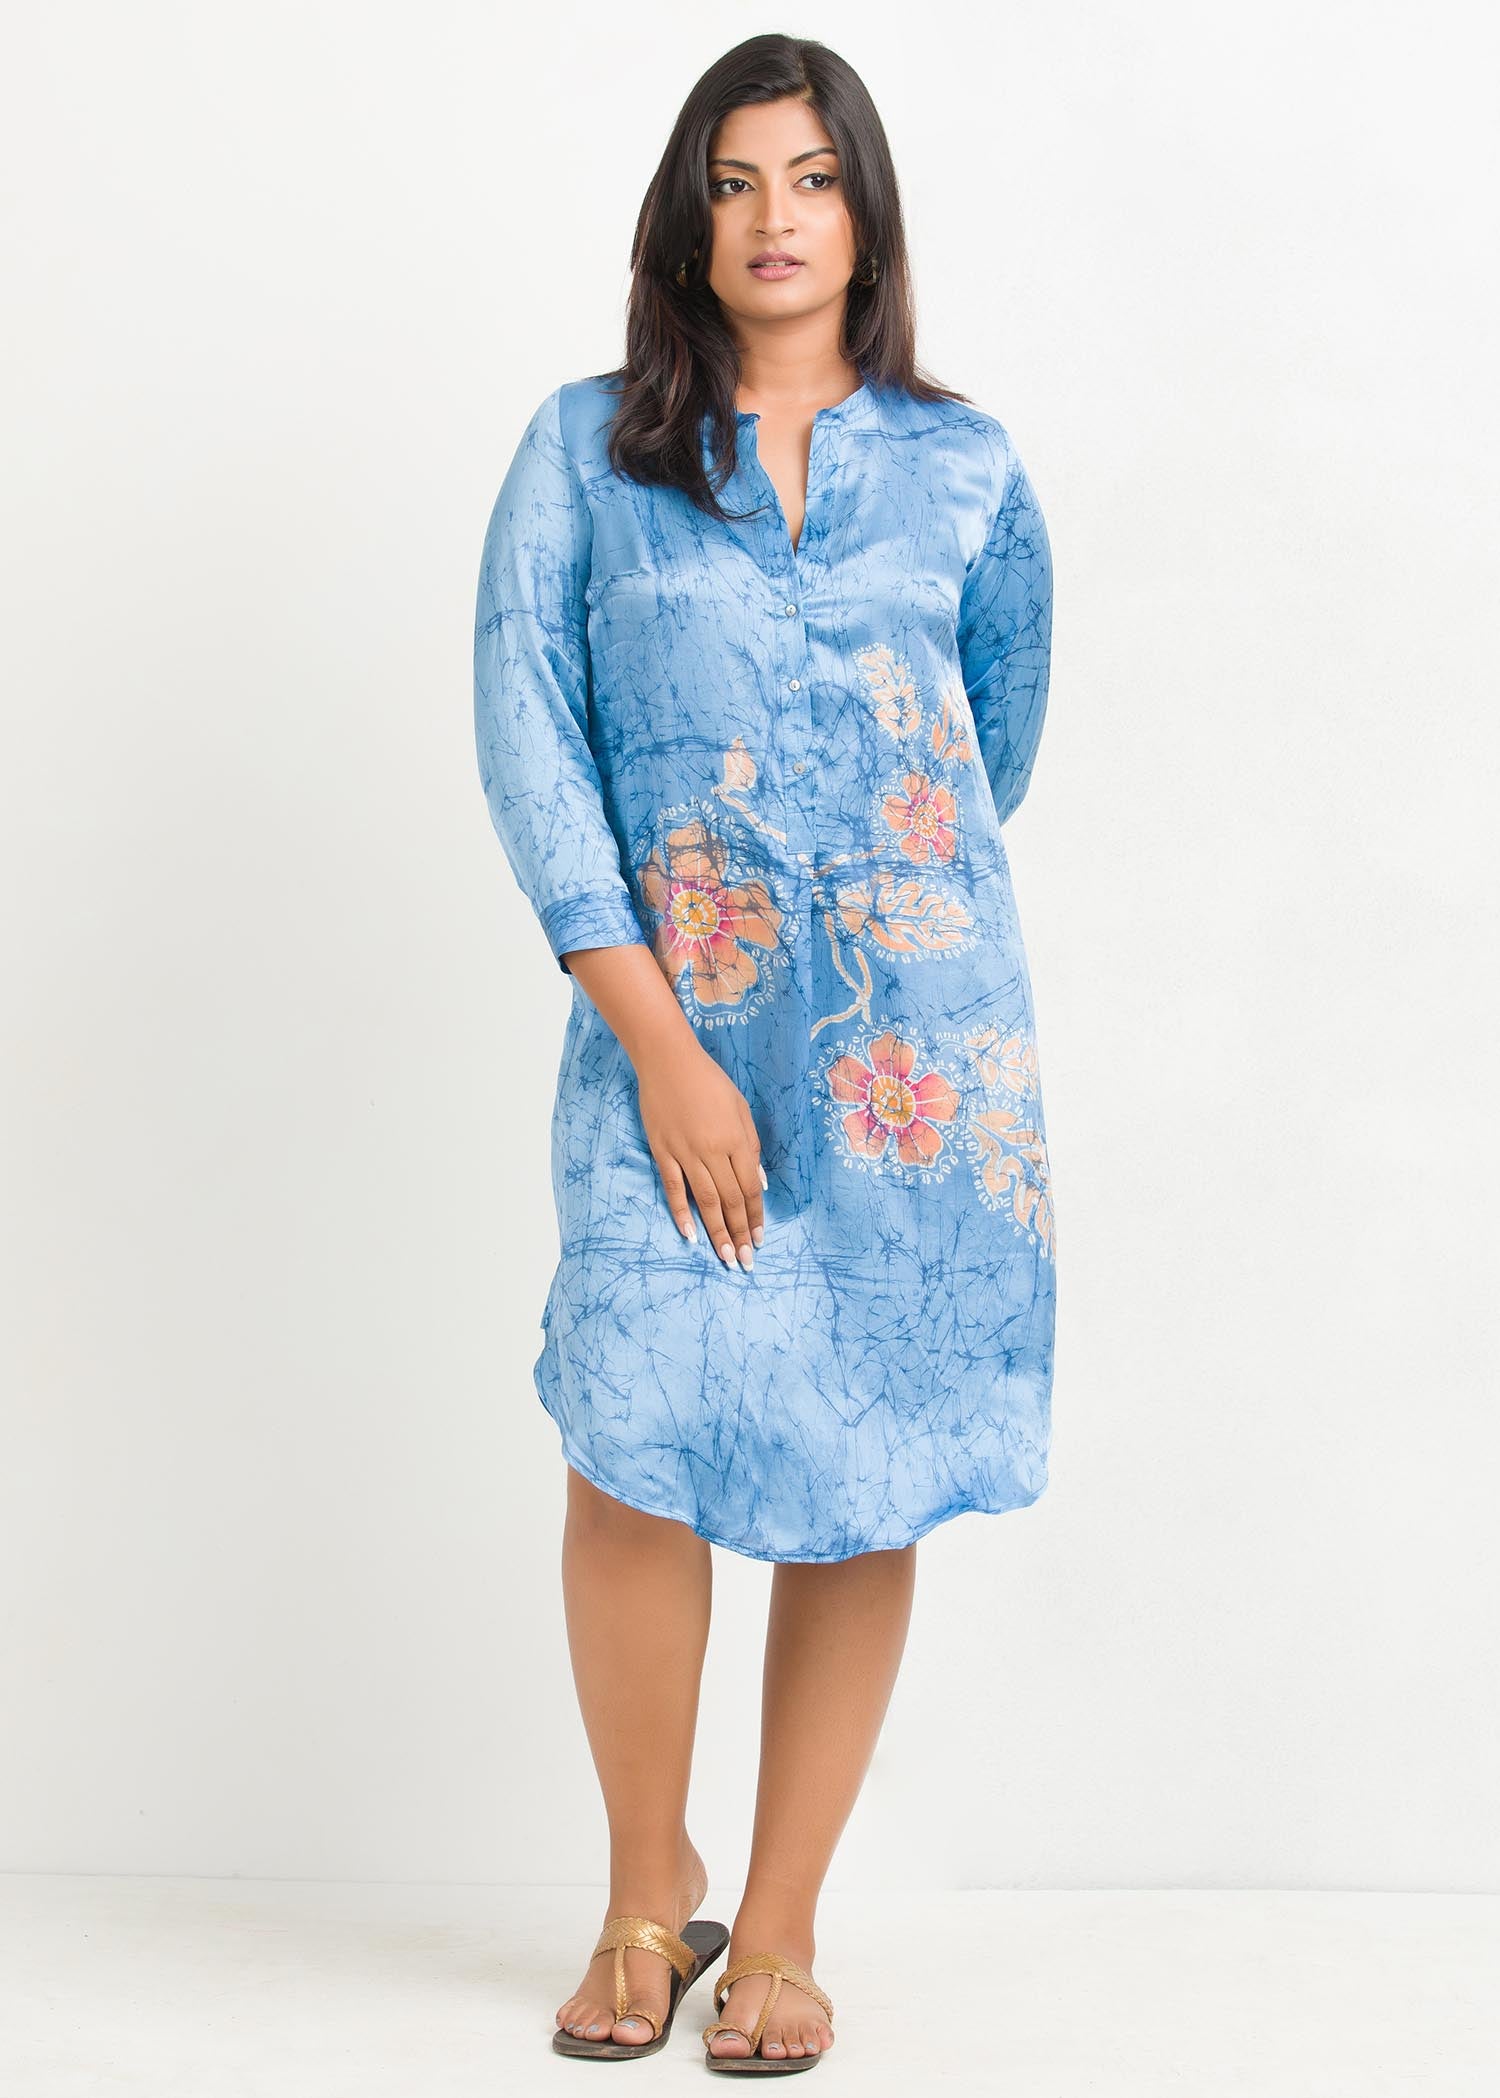 Batik floral and crack designed knee length dress